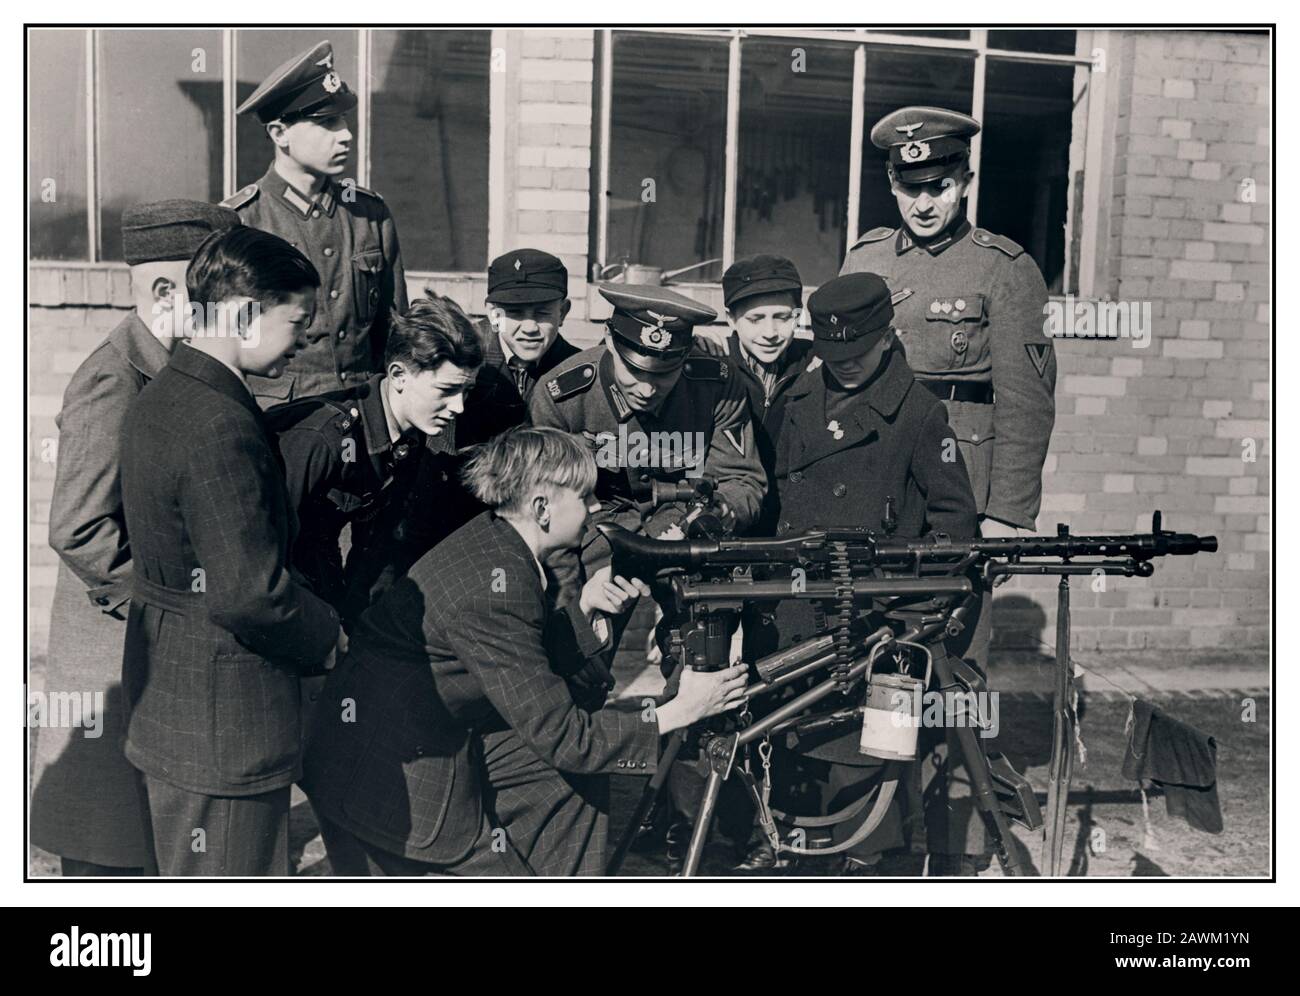 Vintage WW2 1940 les officiers allemands nazis Wehrmacht enseignent et forment les jeunes allemands Hitler, le Hitlerjugend, le mouvement de jeunesse du Parti nazi, comment faire fonctionner une mitrailleuse MG-34 pour permettre à ses membres de lutter fidèlement pour l'Allemagne nazie comme soldats.1942. Deuxième Guerre mondiale deuxième Guerre mondiale Banque D'Images